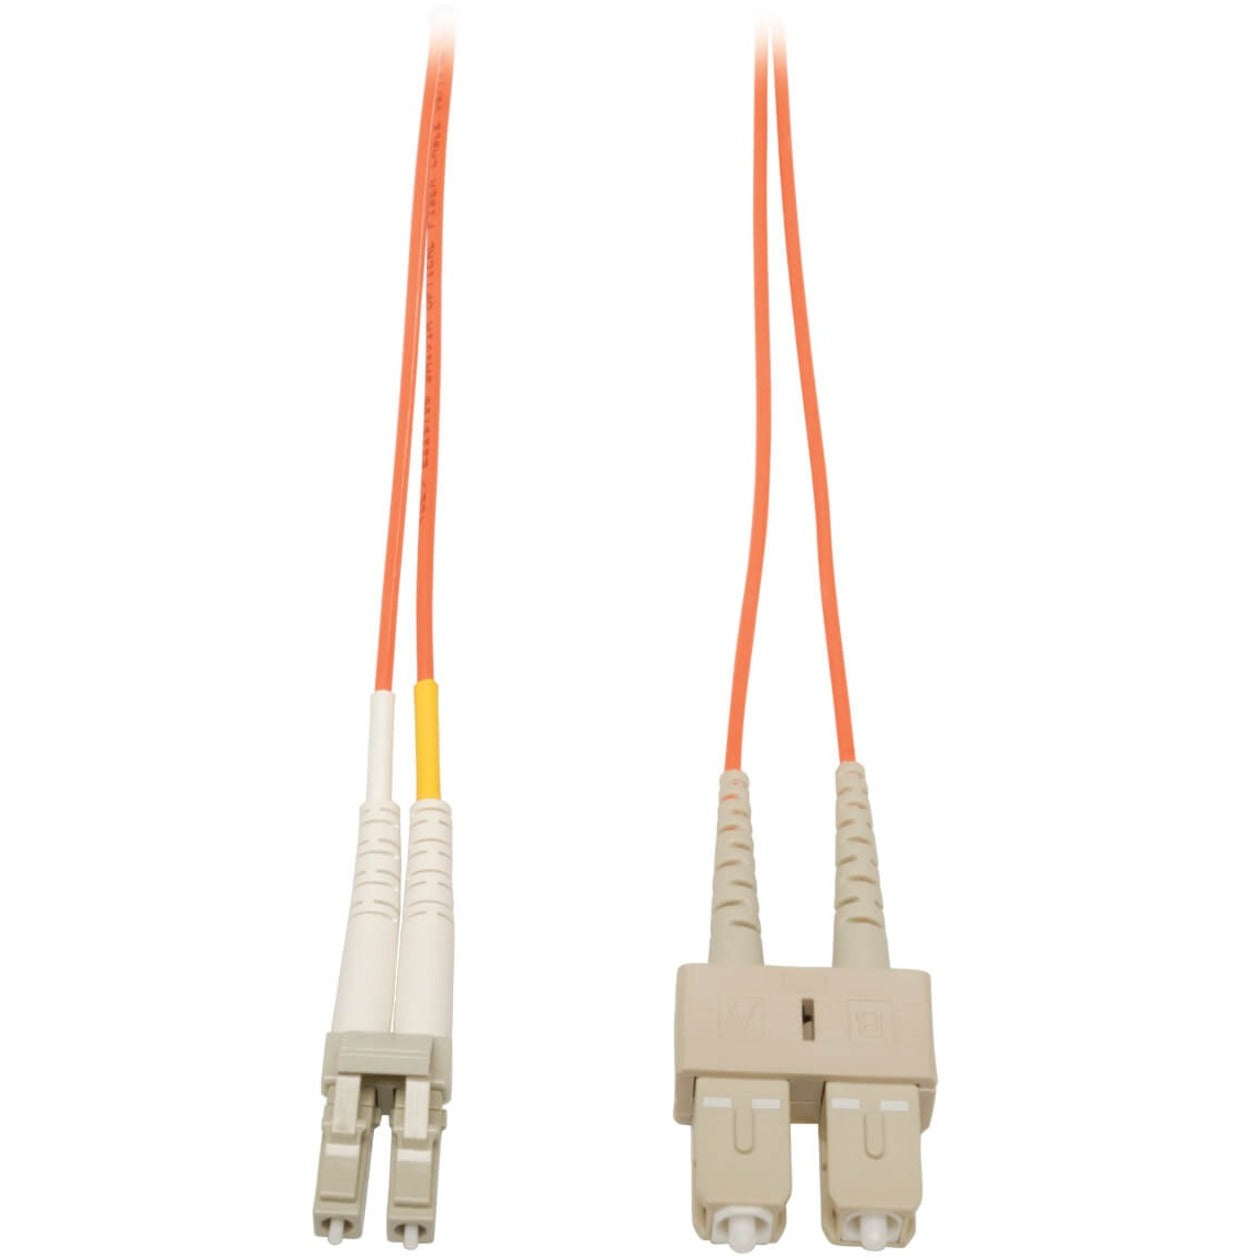 Tripp Lite N316-10M Fiber Optic Duplex Patch Cable, 32.80 ft, Orange, Lifetime Warranty